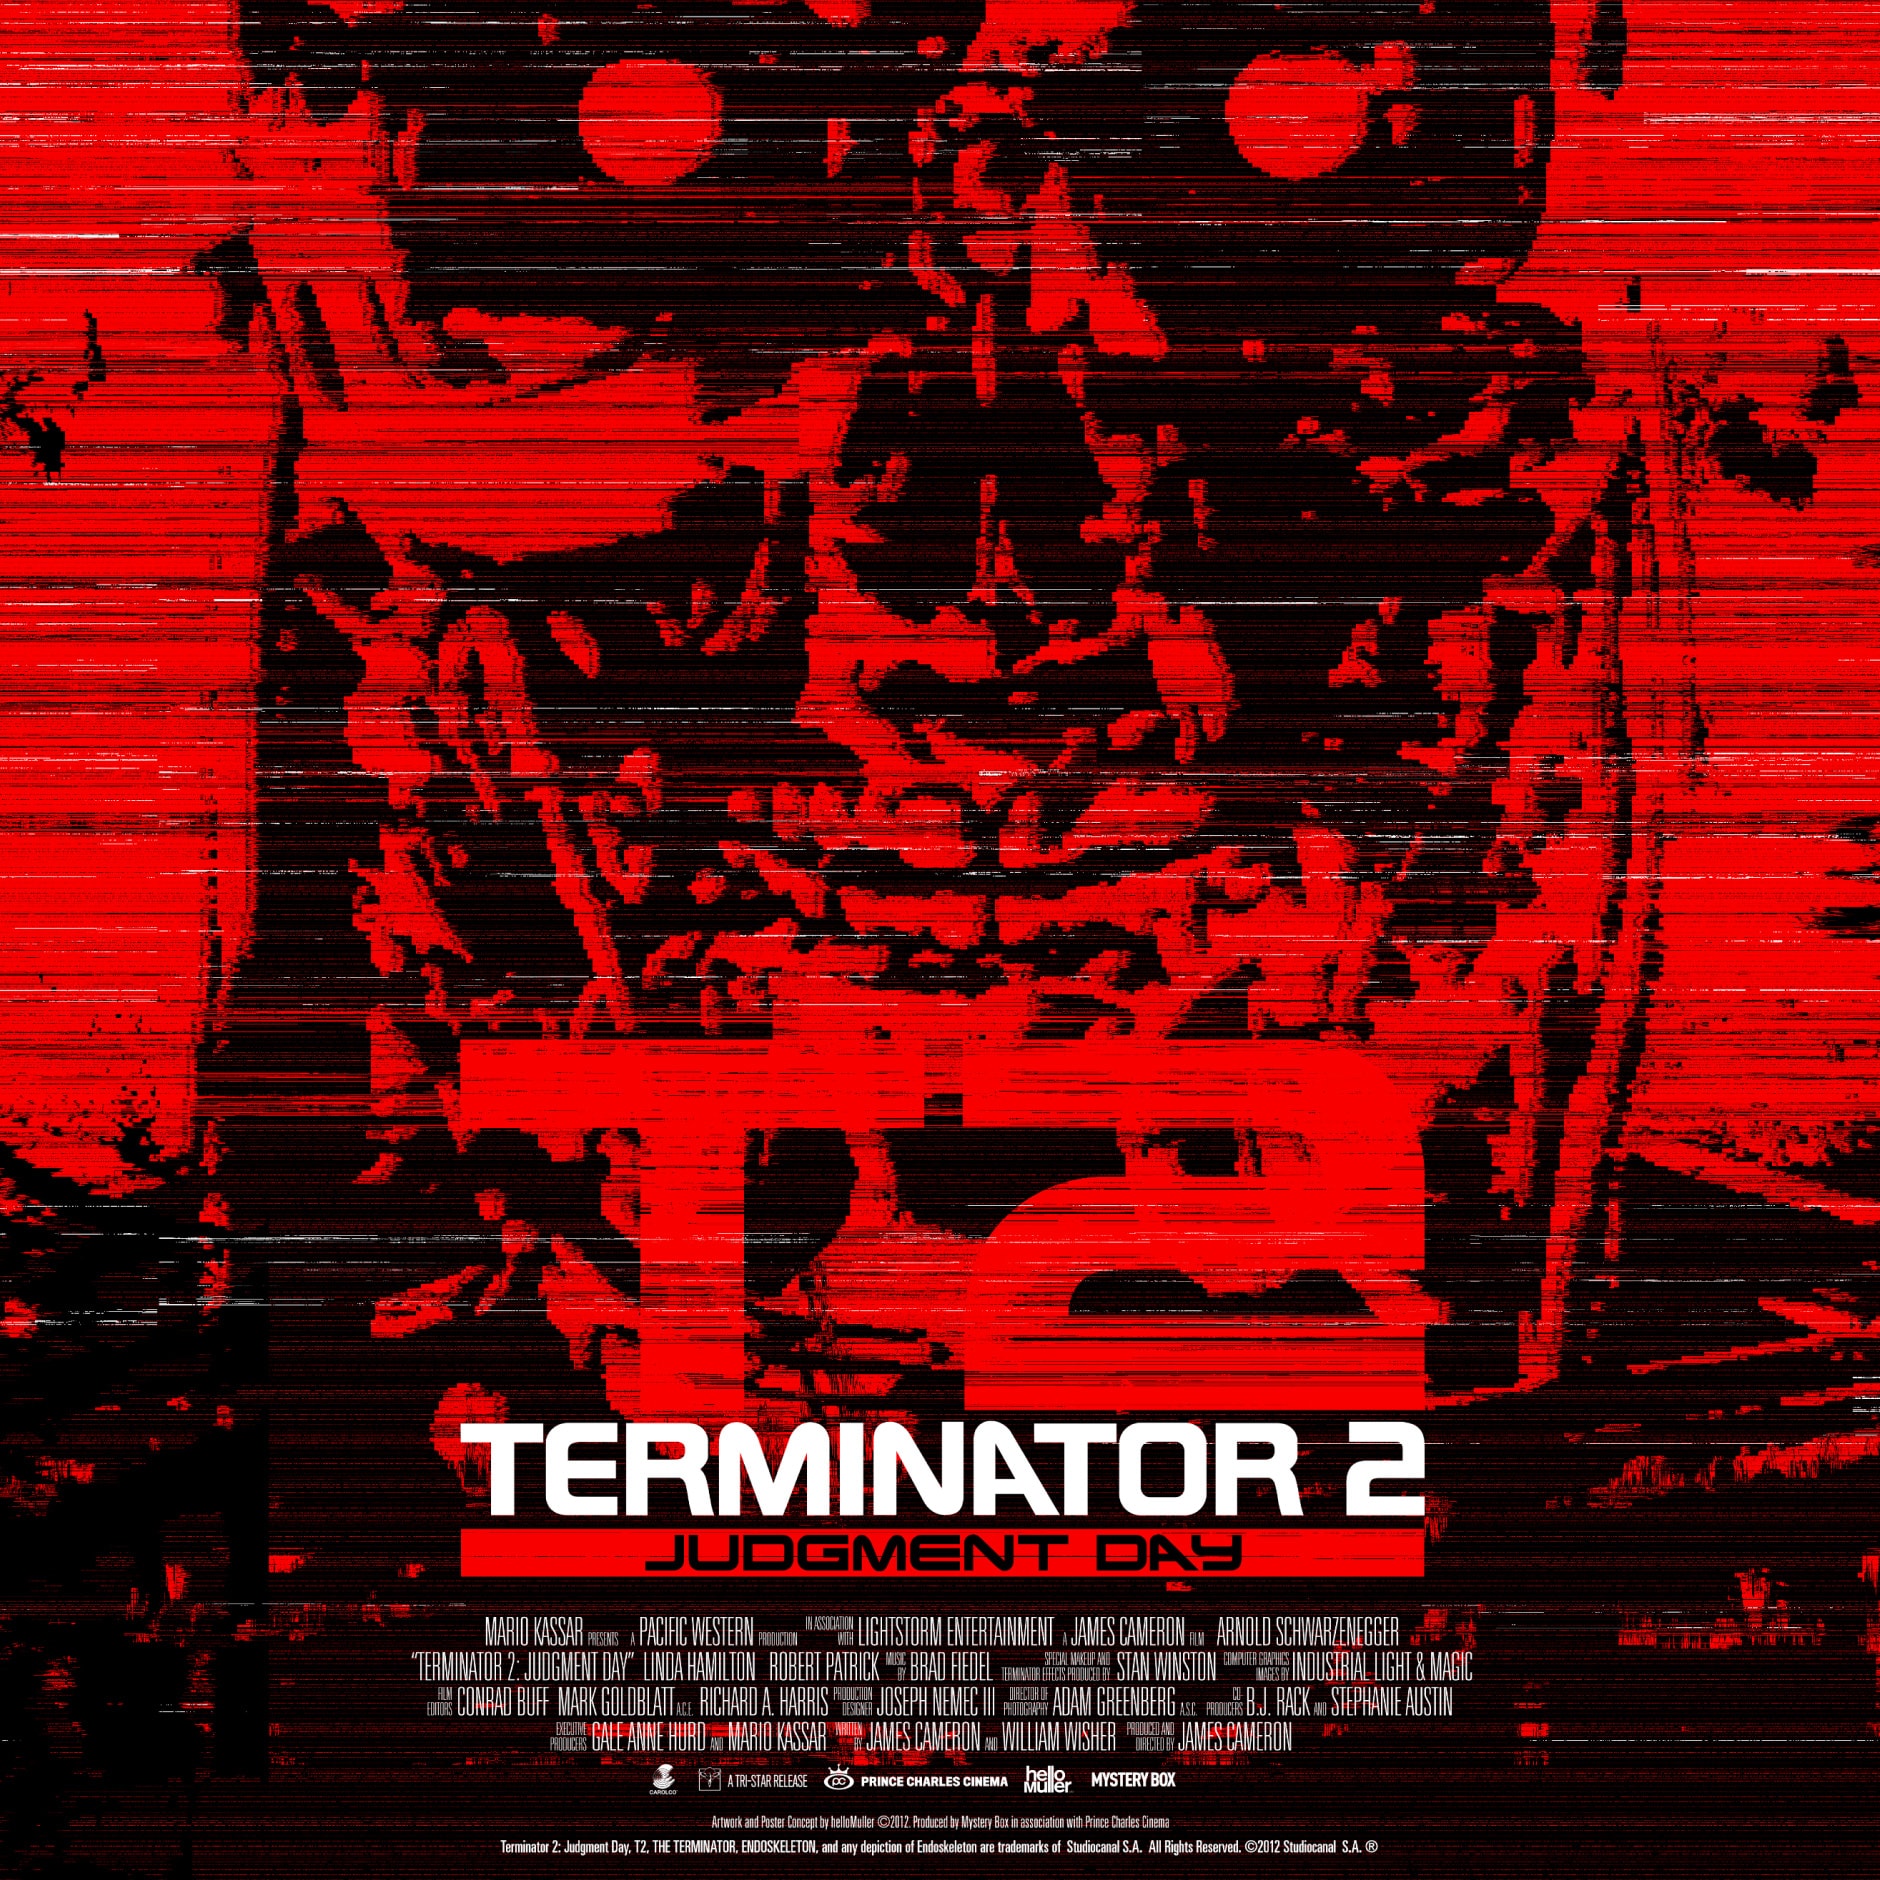 Terminator 2 poster detail